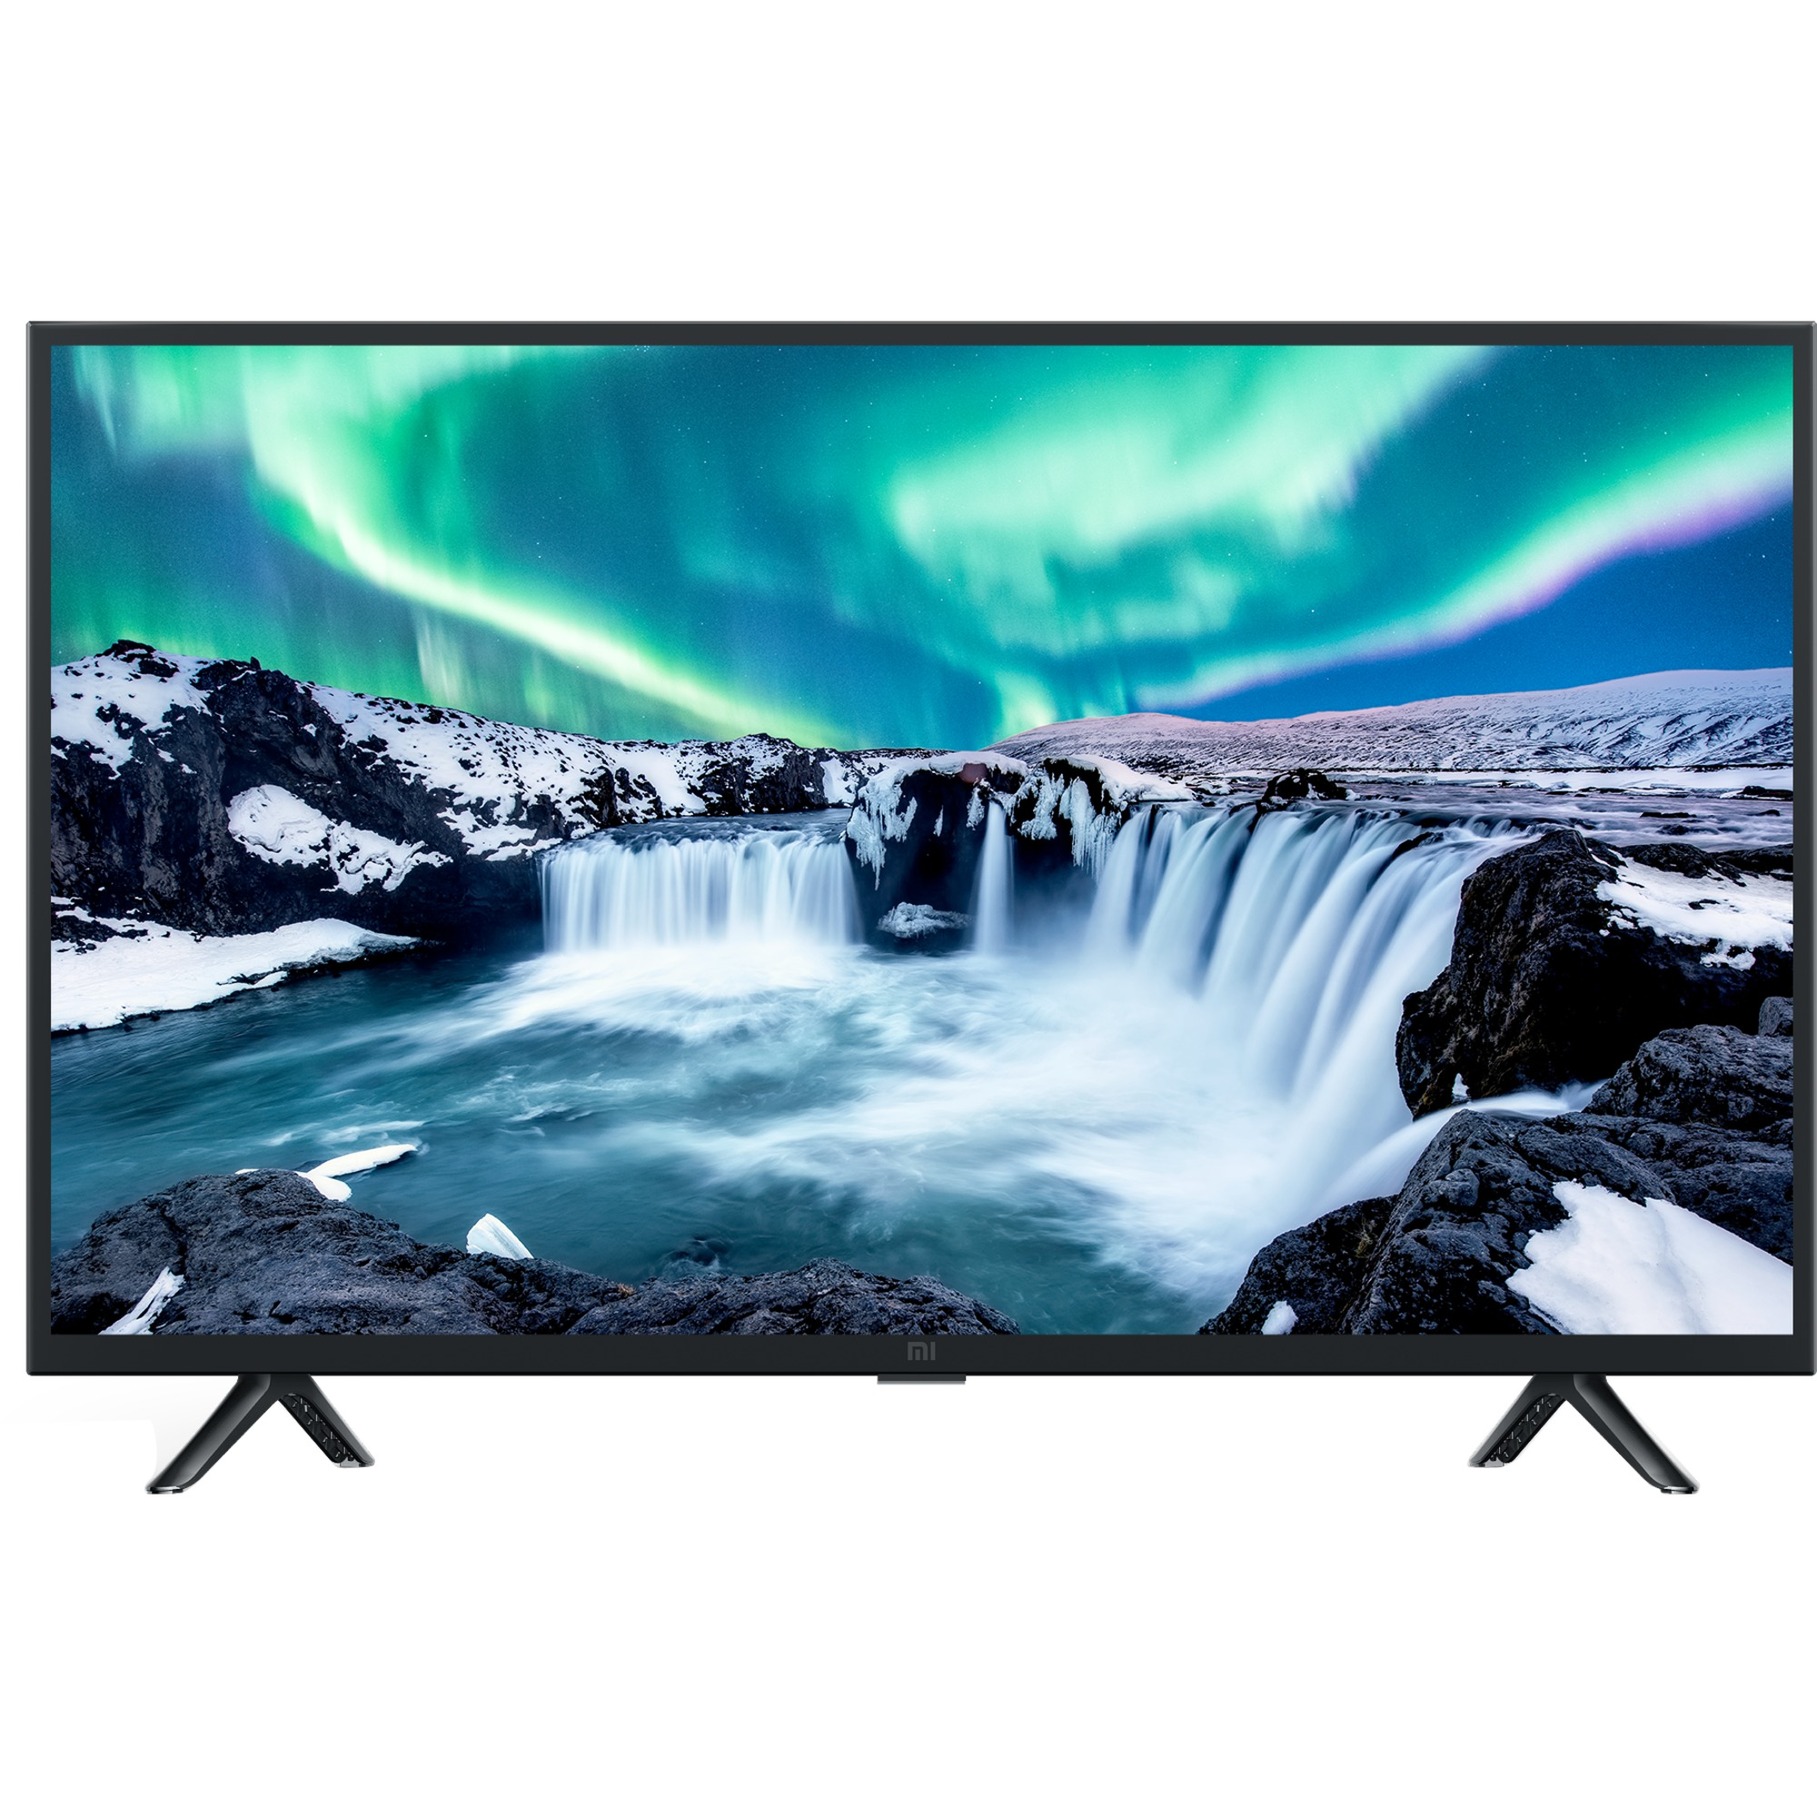 Image of Alternate - Mi SmartTV 4A, LED-Fernseher online einkaufen bei Alternate